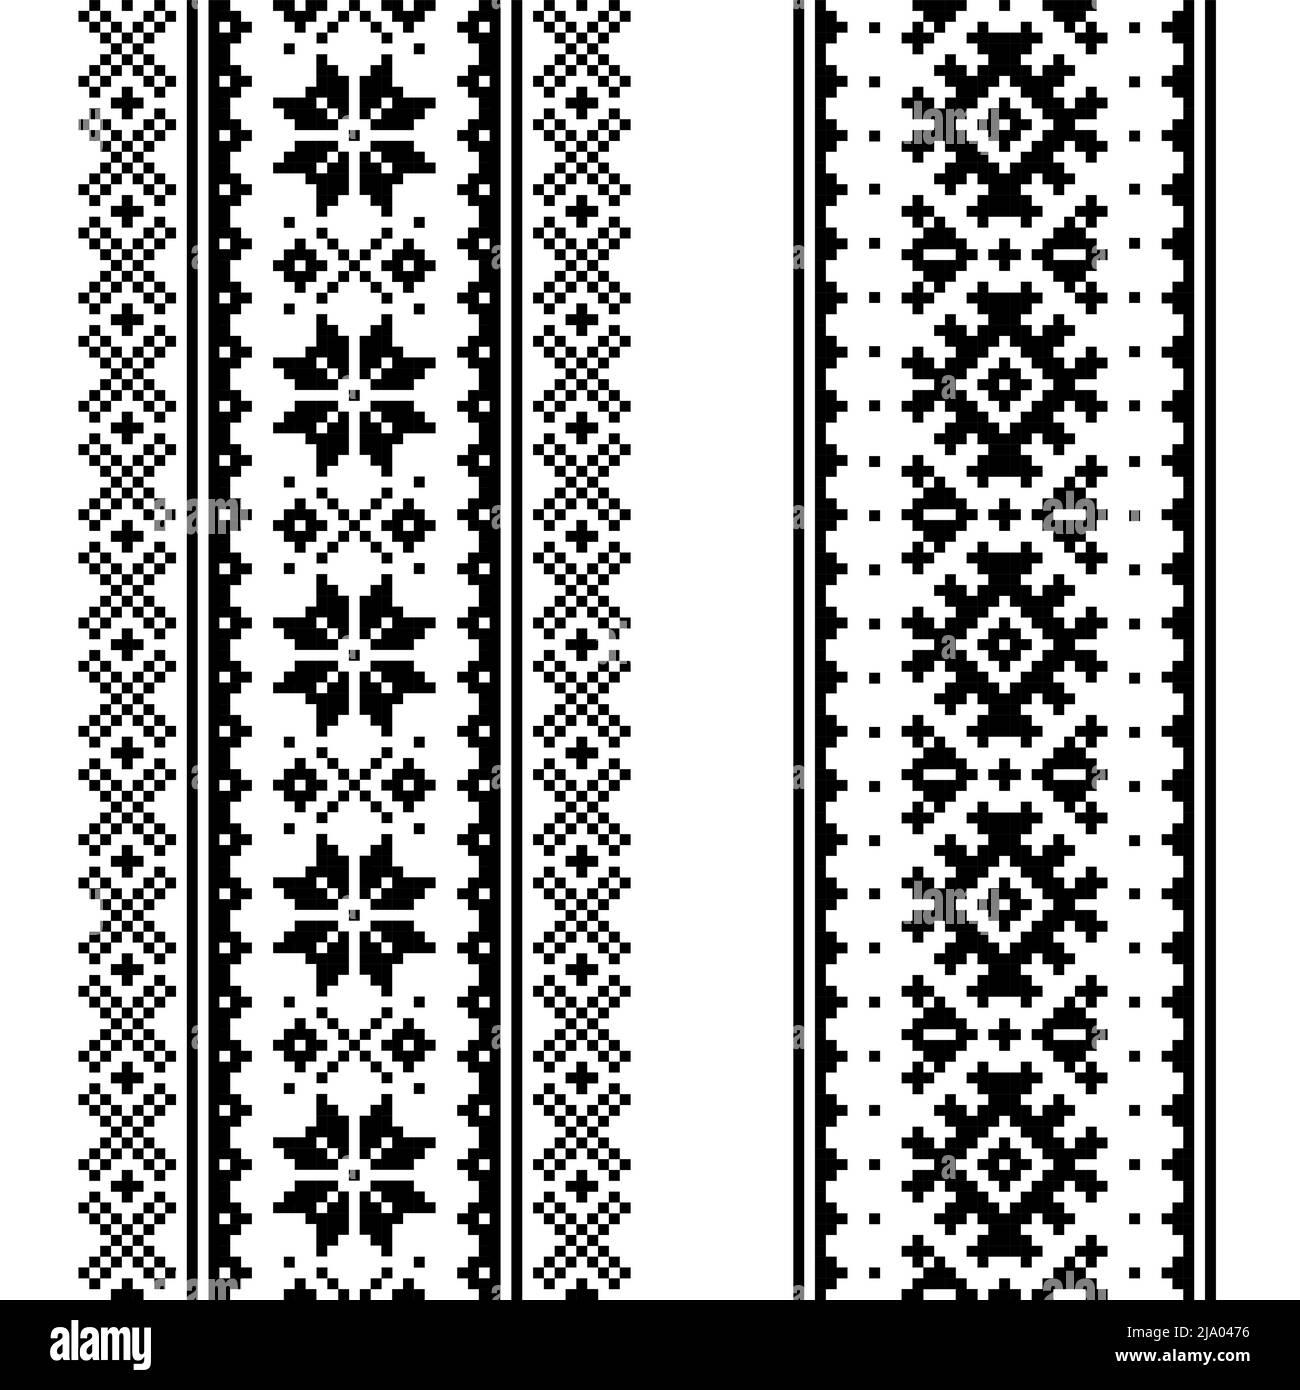 Vettore d'inverno seamless pattern impostato - due Natale design verticale, popolazione Sami, Lapponia folk art design tradizionale, della maglieria e del ricamo Illustrazione Vettoriale